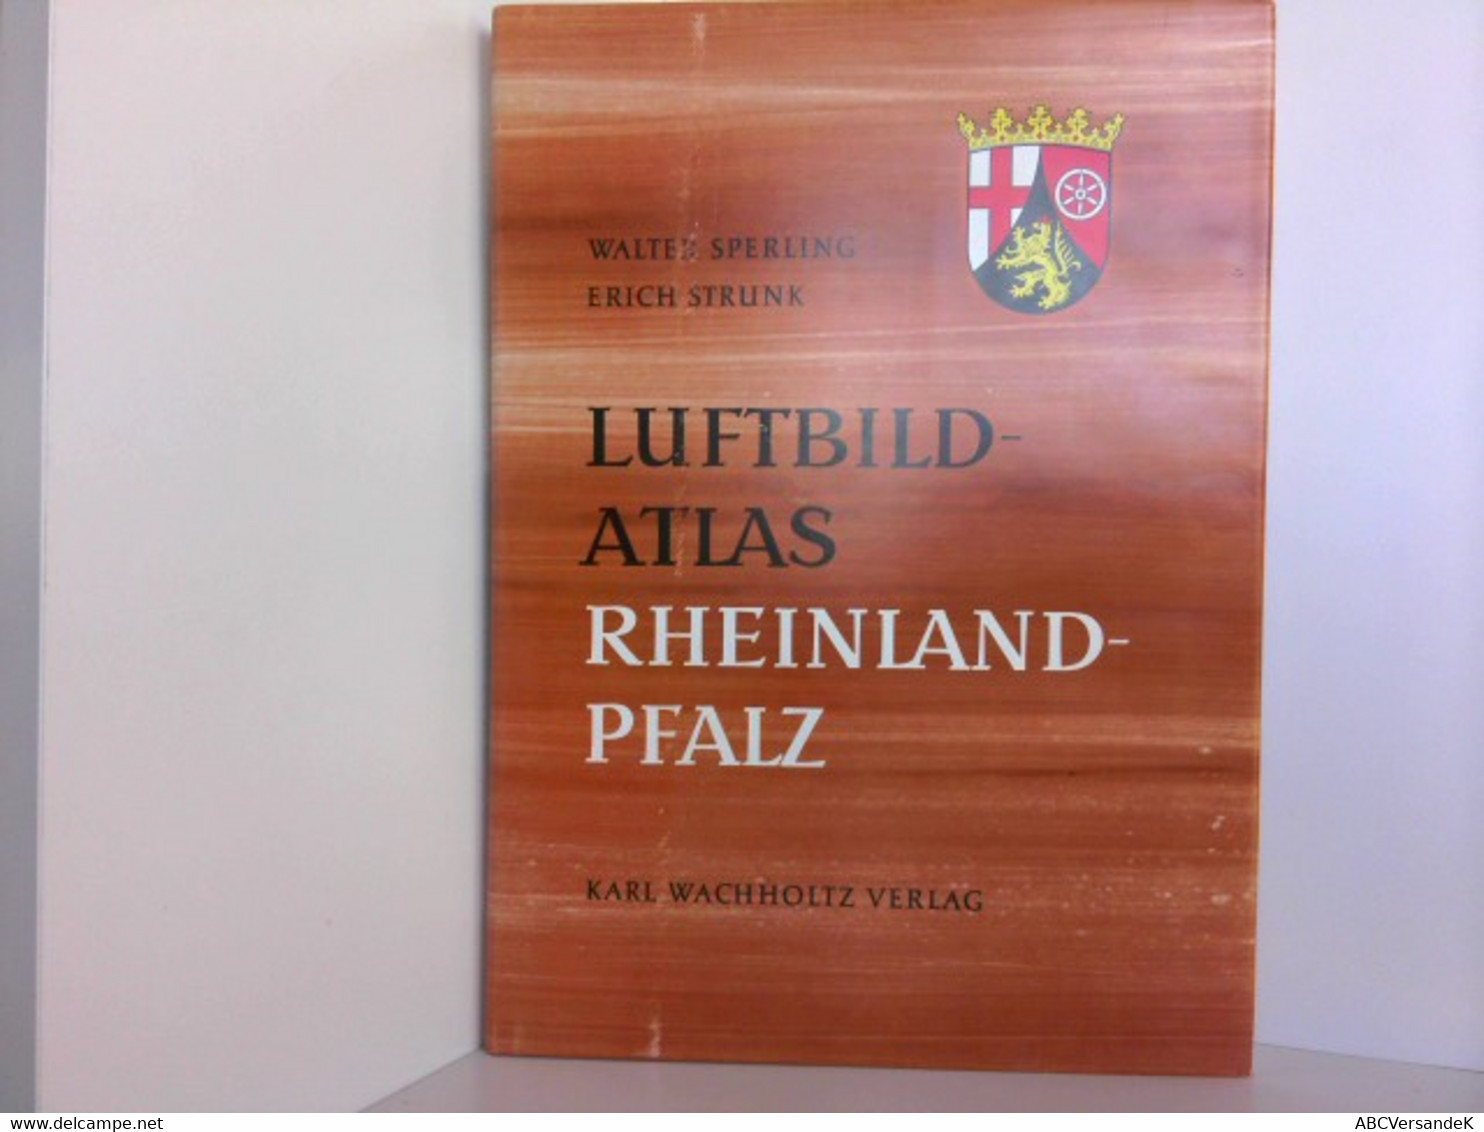 Luftbild-Atlas. Rheinland-Pfalz, Eine Landeskunde - Germany (general)